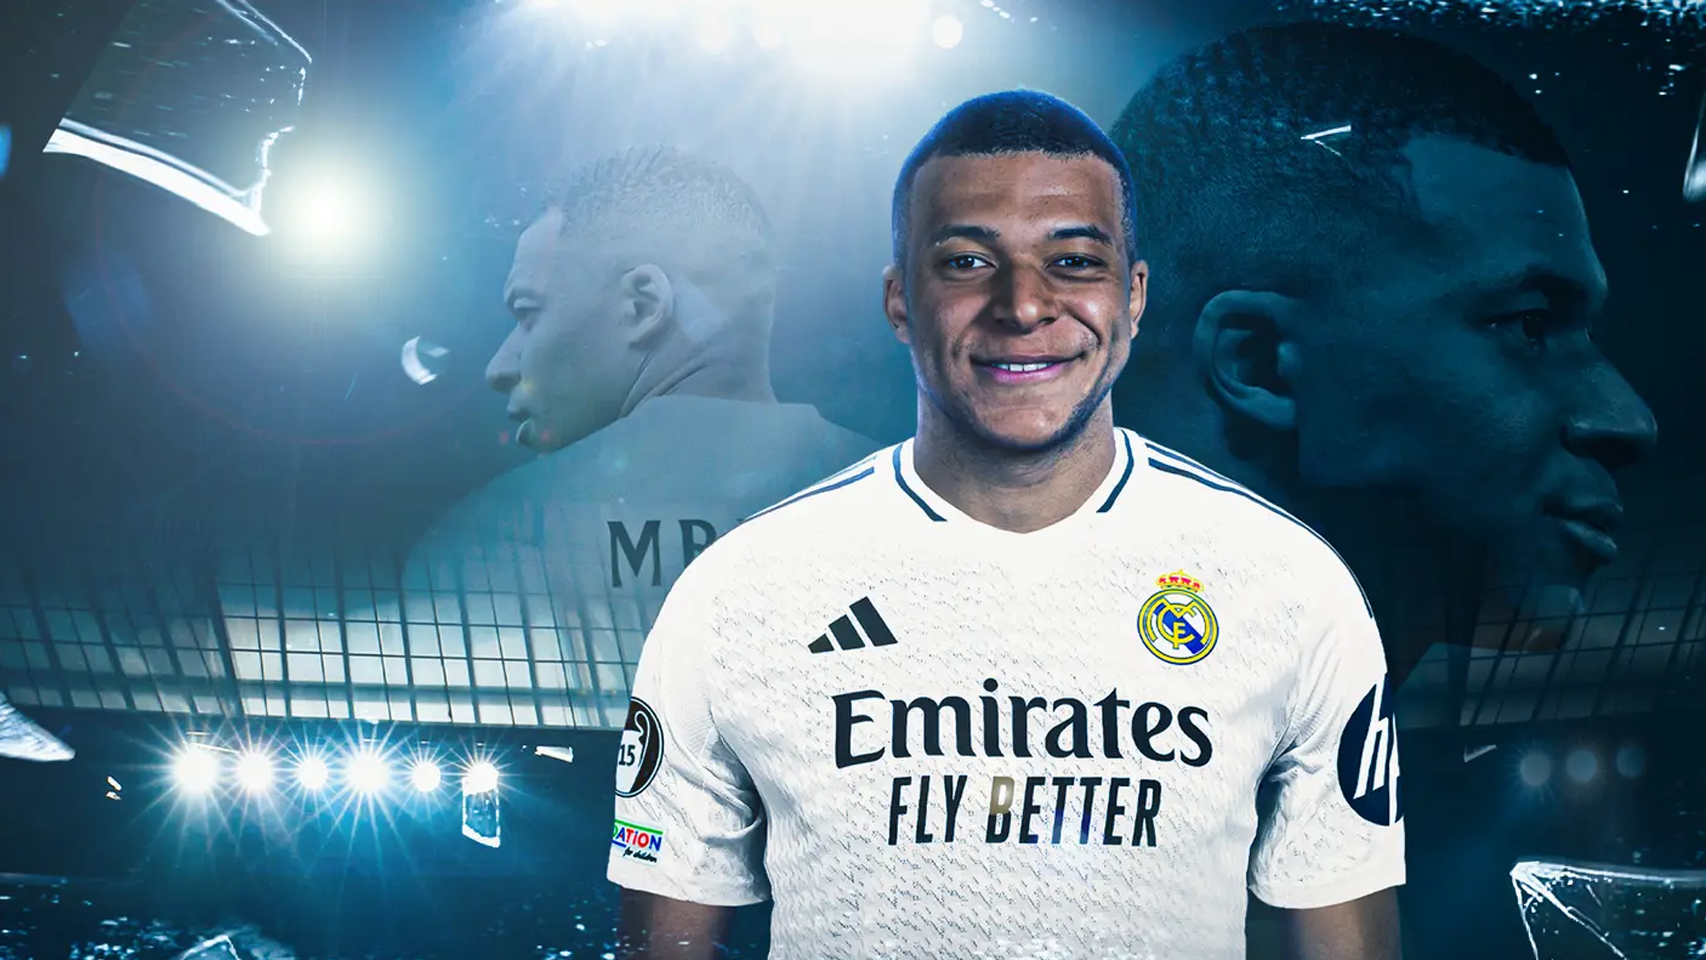 Imagen comercial de la venta de camisetas de Kylian Mbappé en el Real Madrid